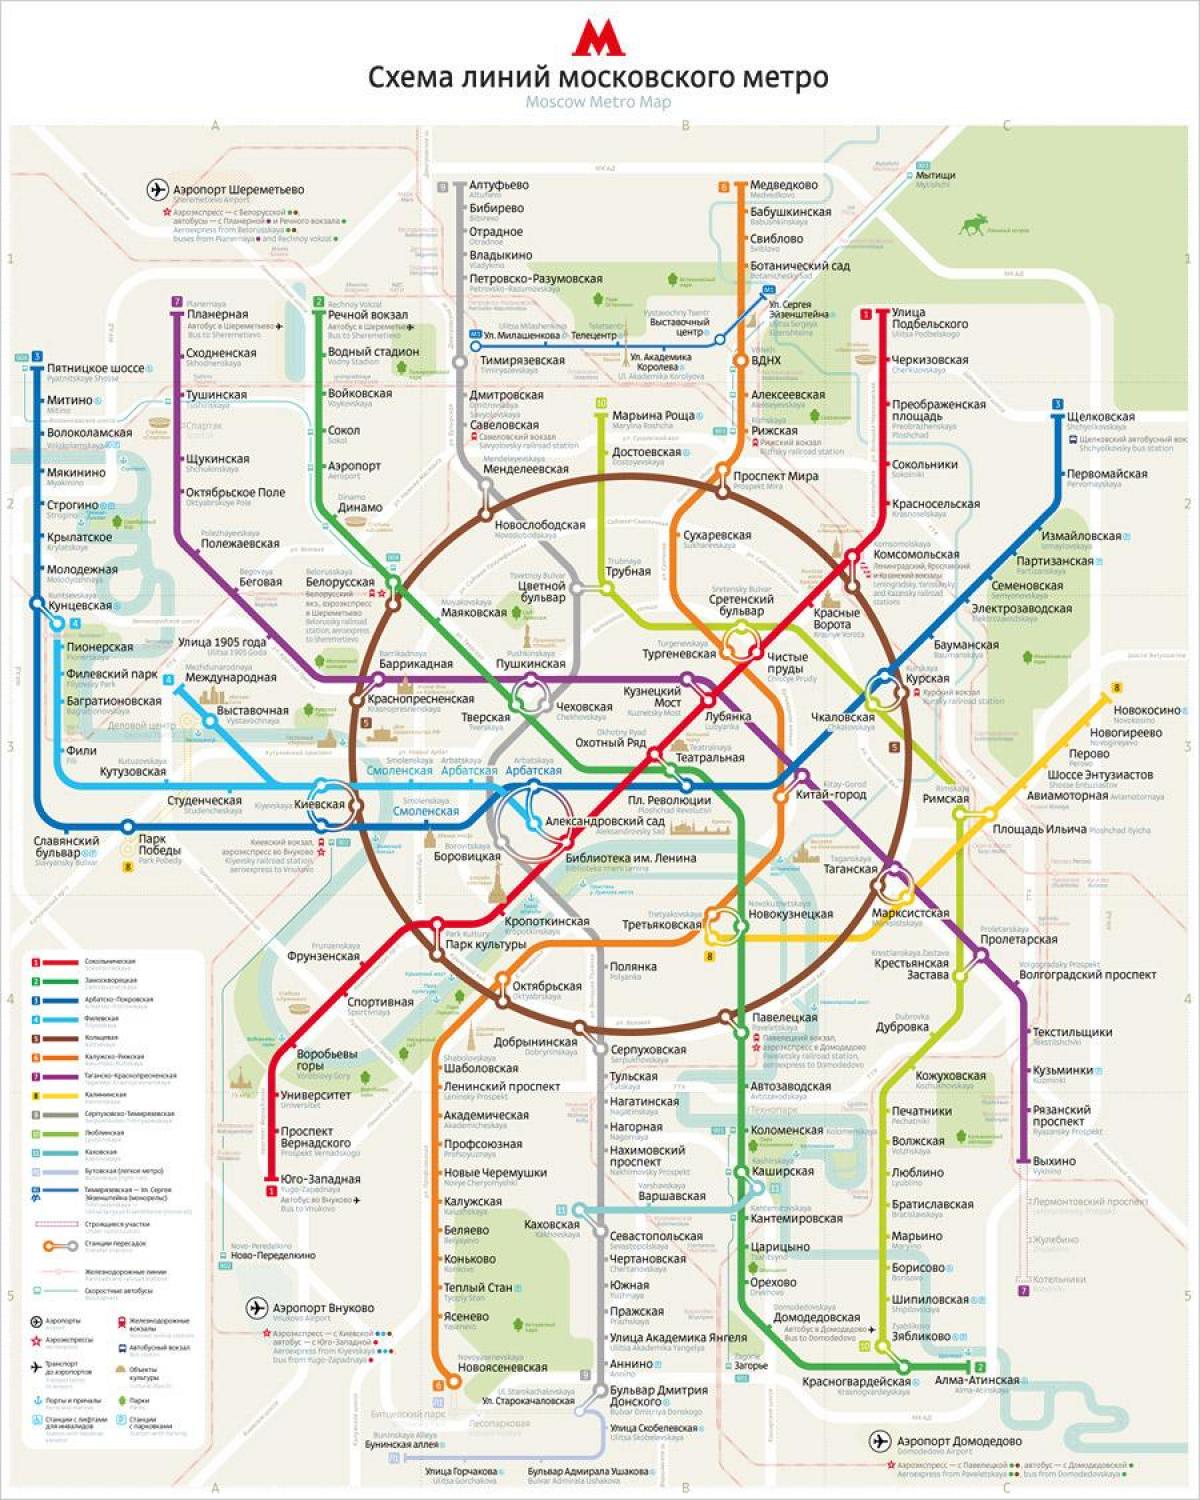 peta Moscow metro inggris dan rusia